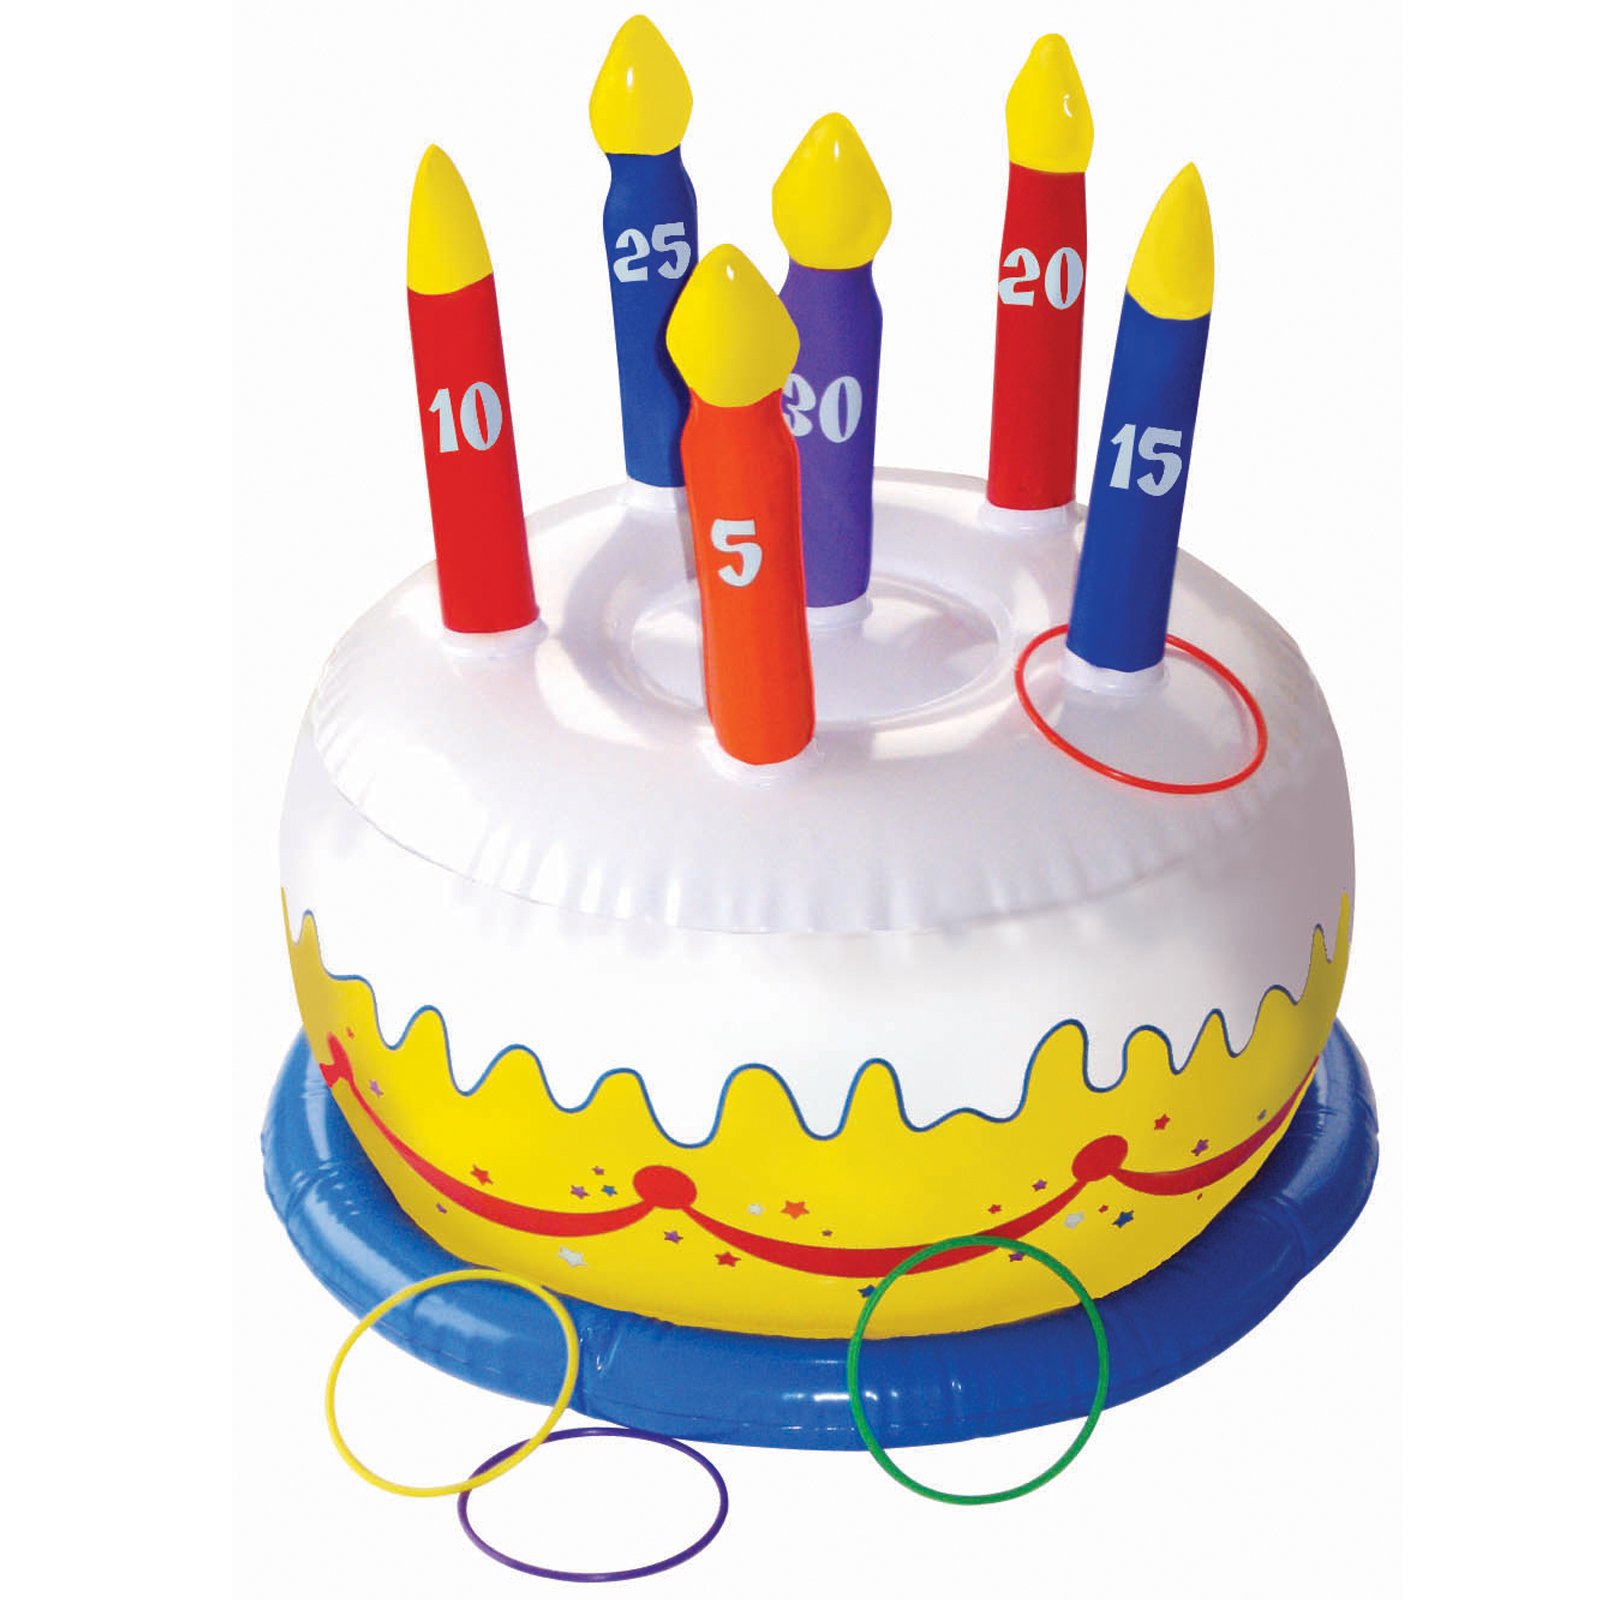 充气蛋糕套圈游戏 生日party道具 投掷套圈玩具生日蛋糕仿真特价